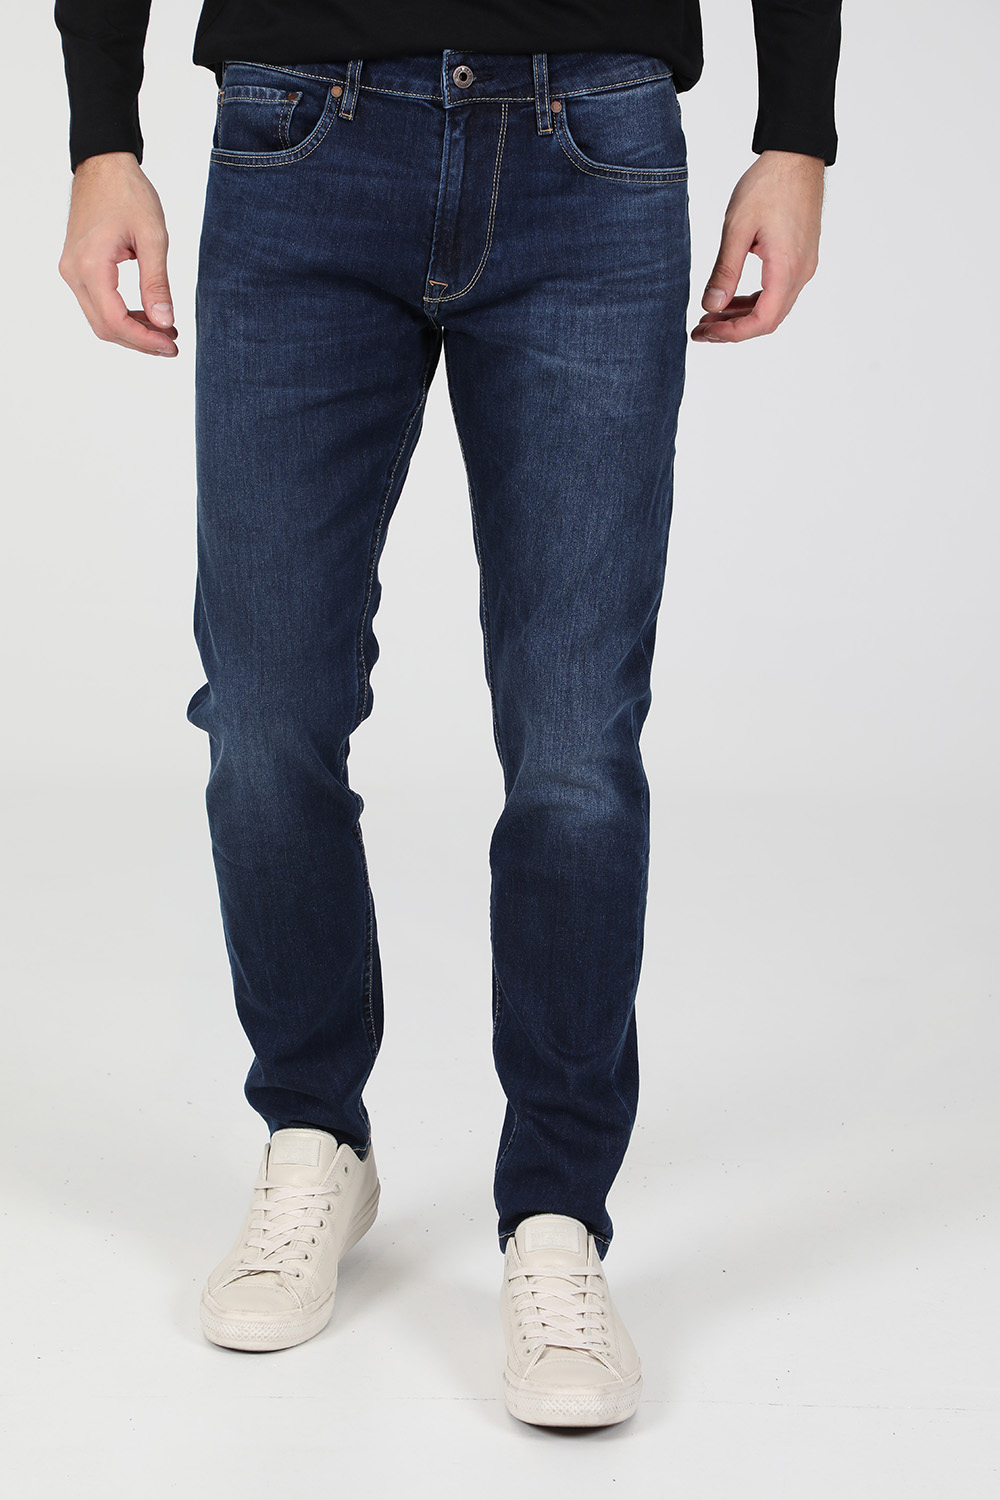 Ανδρικά/Ρούχα/Τζίν/Straight PEPE JEANS - Ανδρικό jean παντελόνι PEPE JEANS STANLEY μπλε